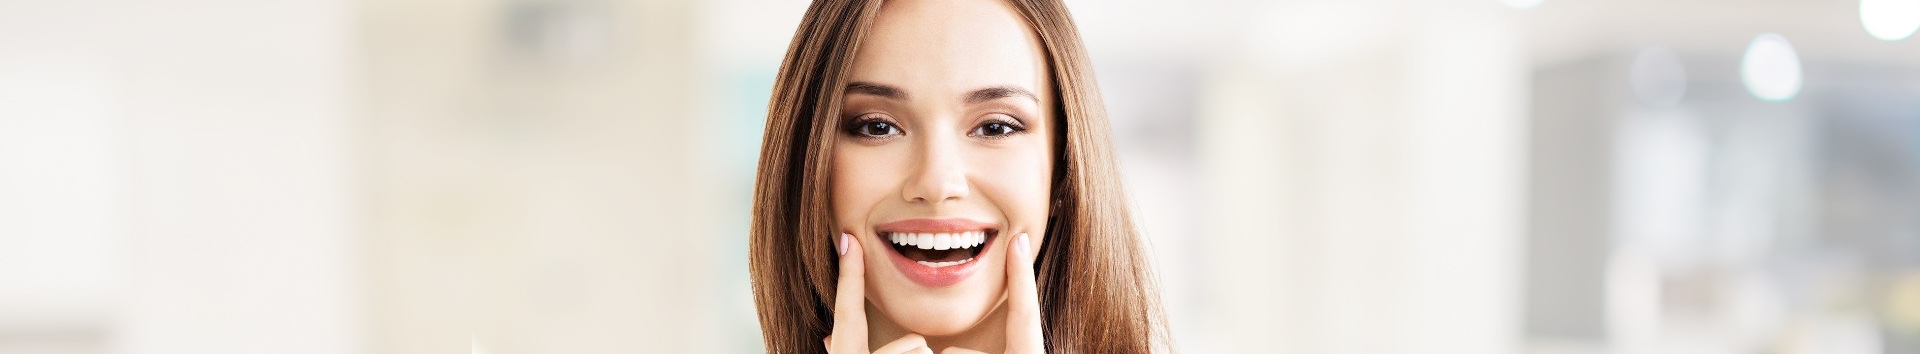 Mulheres têm a saúde bucal mais frágil do que dos homens?